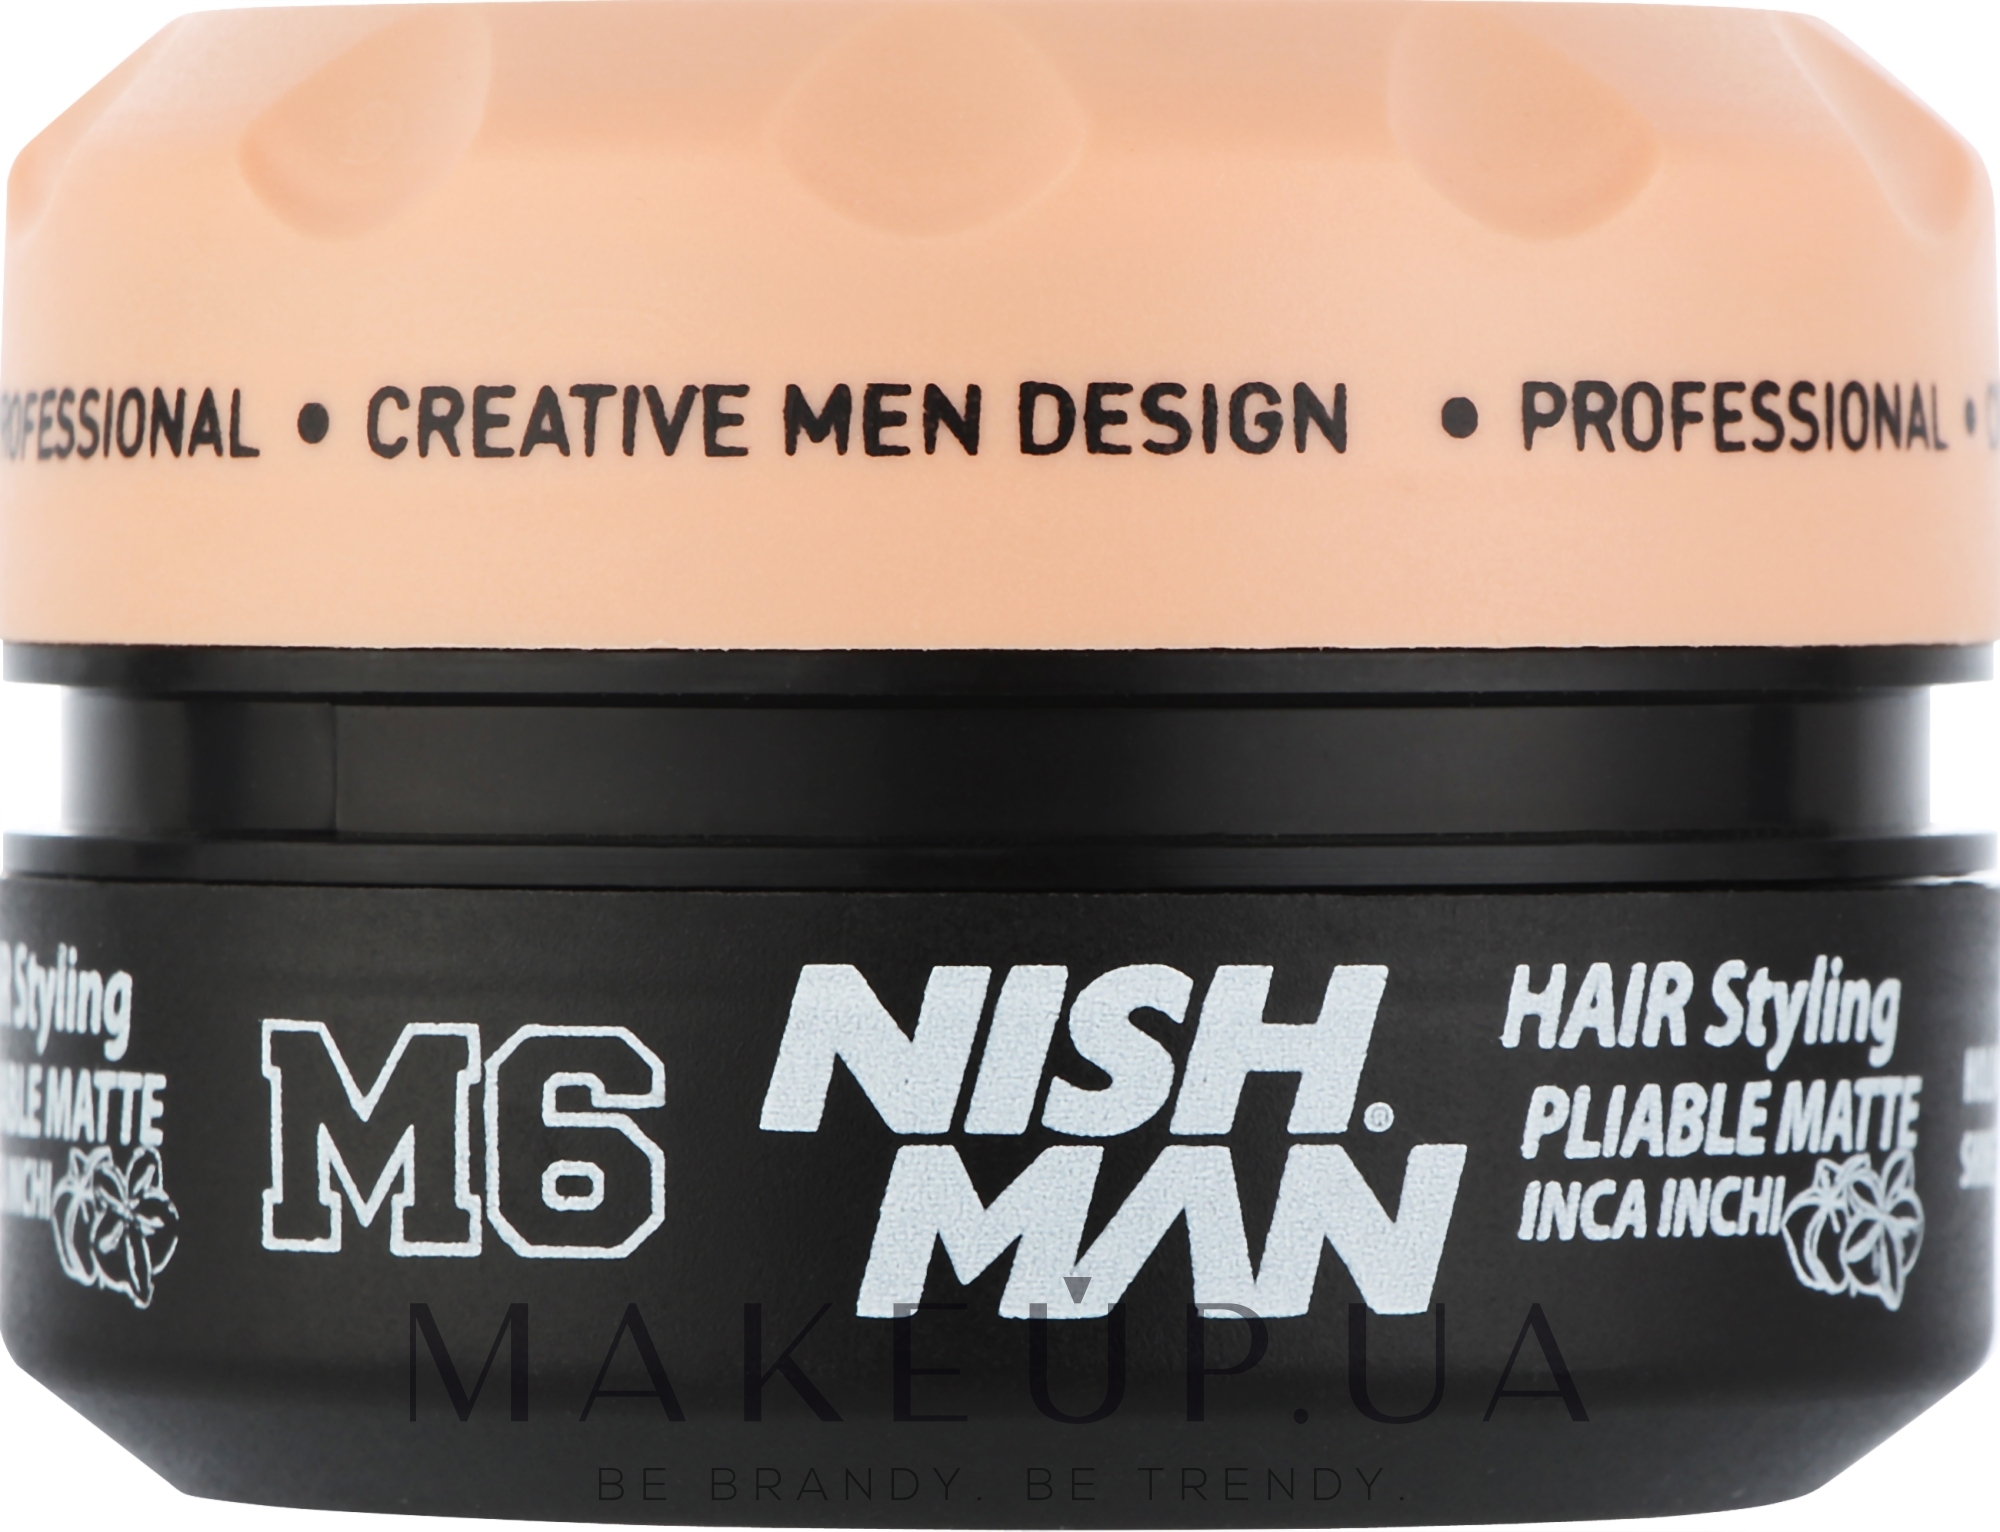 Матовий віск для укладання волосся - Nishman Hair Styling Pliable Matte Inca Inchi M6 — фото 100ml